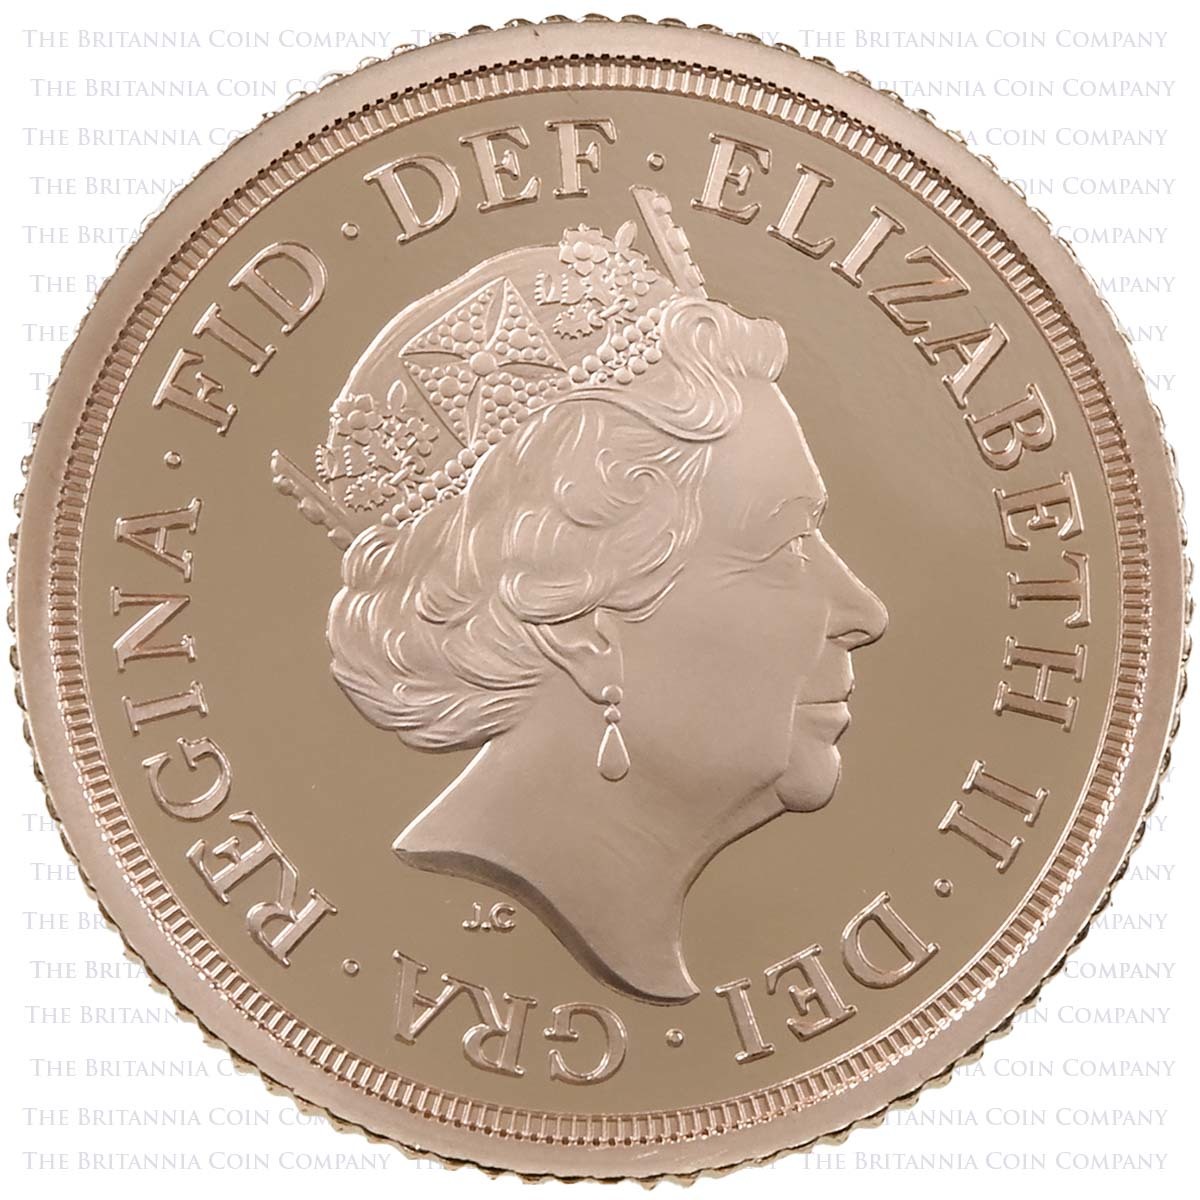 SV419T 2019 Elizabeth II 4-Coin Proof Sovereign Set Half Sovereign Obverse